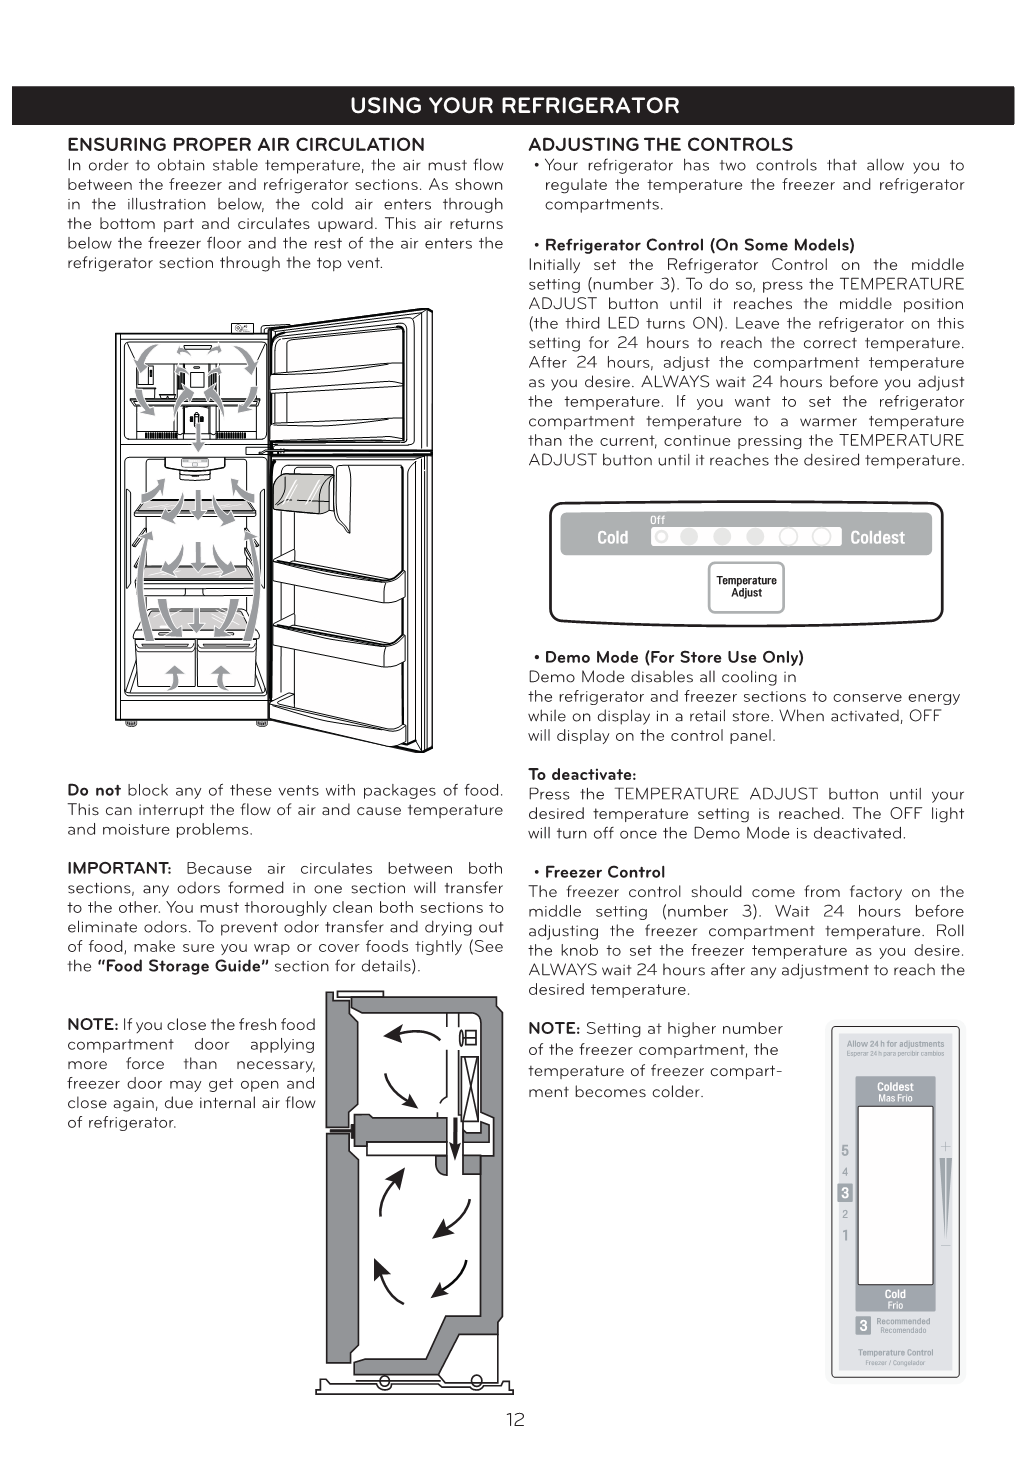 Using Your Refrigerator Using Your Refrigerator